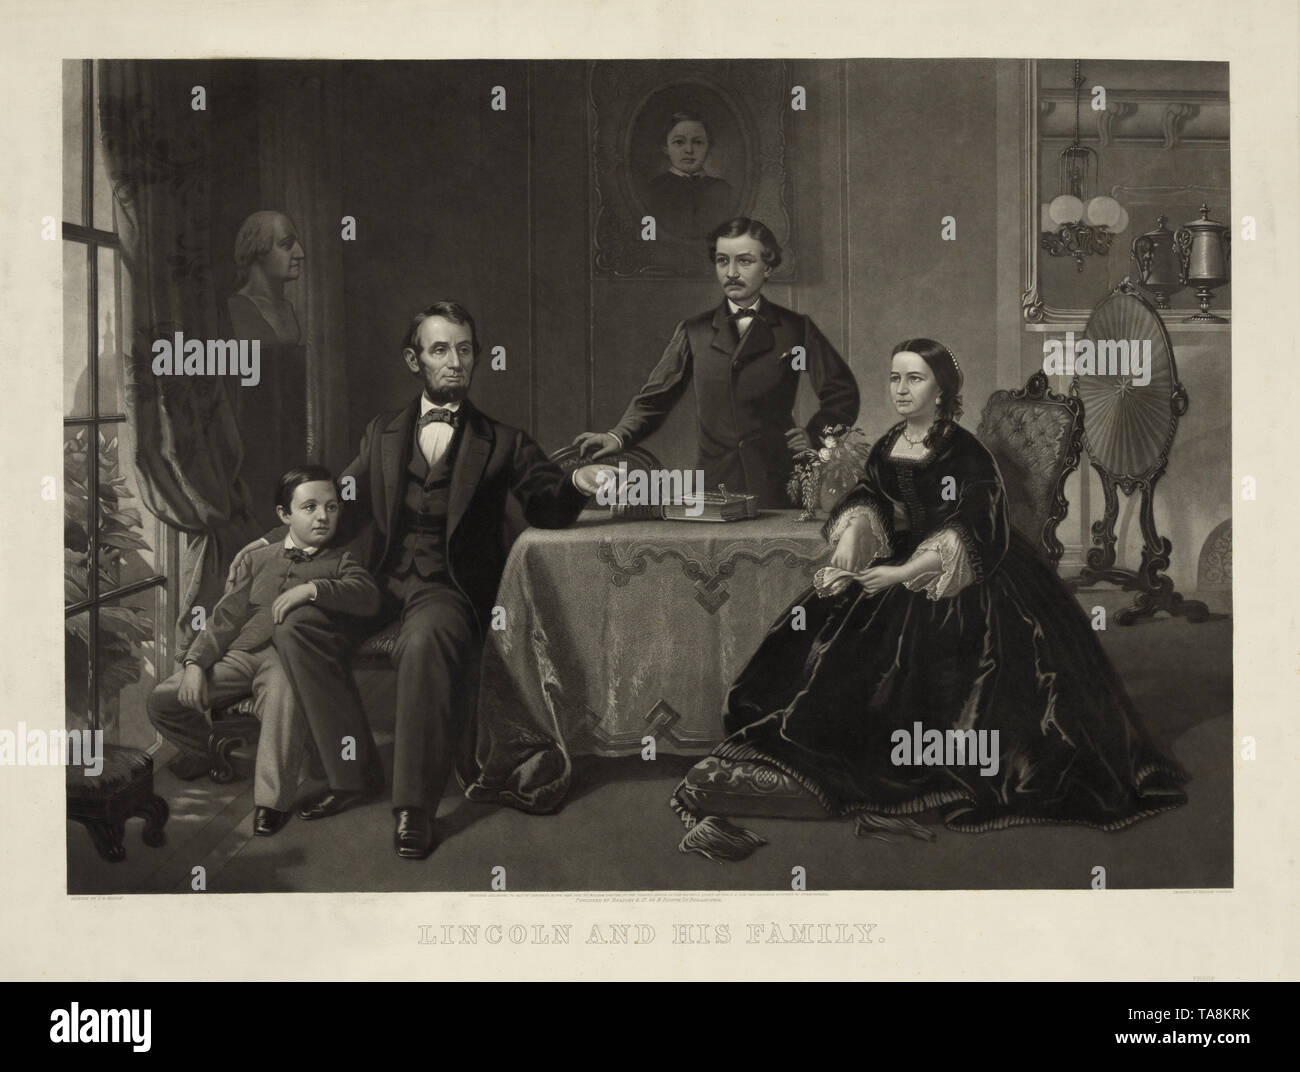 Lincoln et sa famille, Portrait d'Abraham Lincoln avec son épouse Mary Todd Lincoln (assis à droite) et fils Robert (debout) et Thomas (assis à gauche), gravure par William Sartain D'après une peinture par Samuel Bell Waugh, publié par Bradley & Co., 1866 Banque D'Images